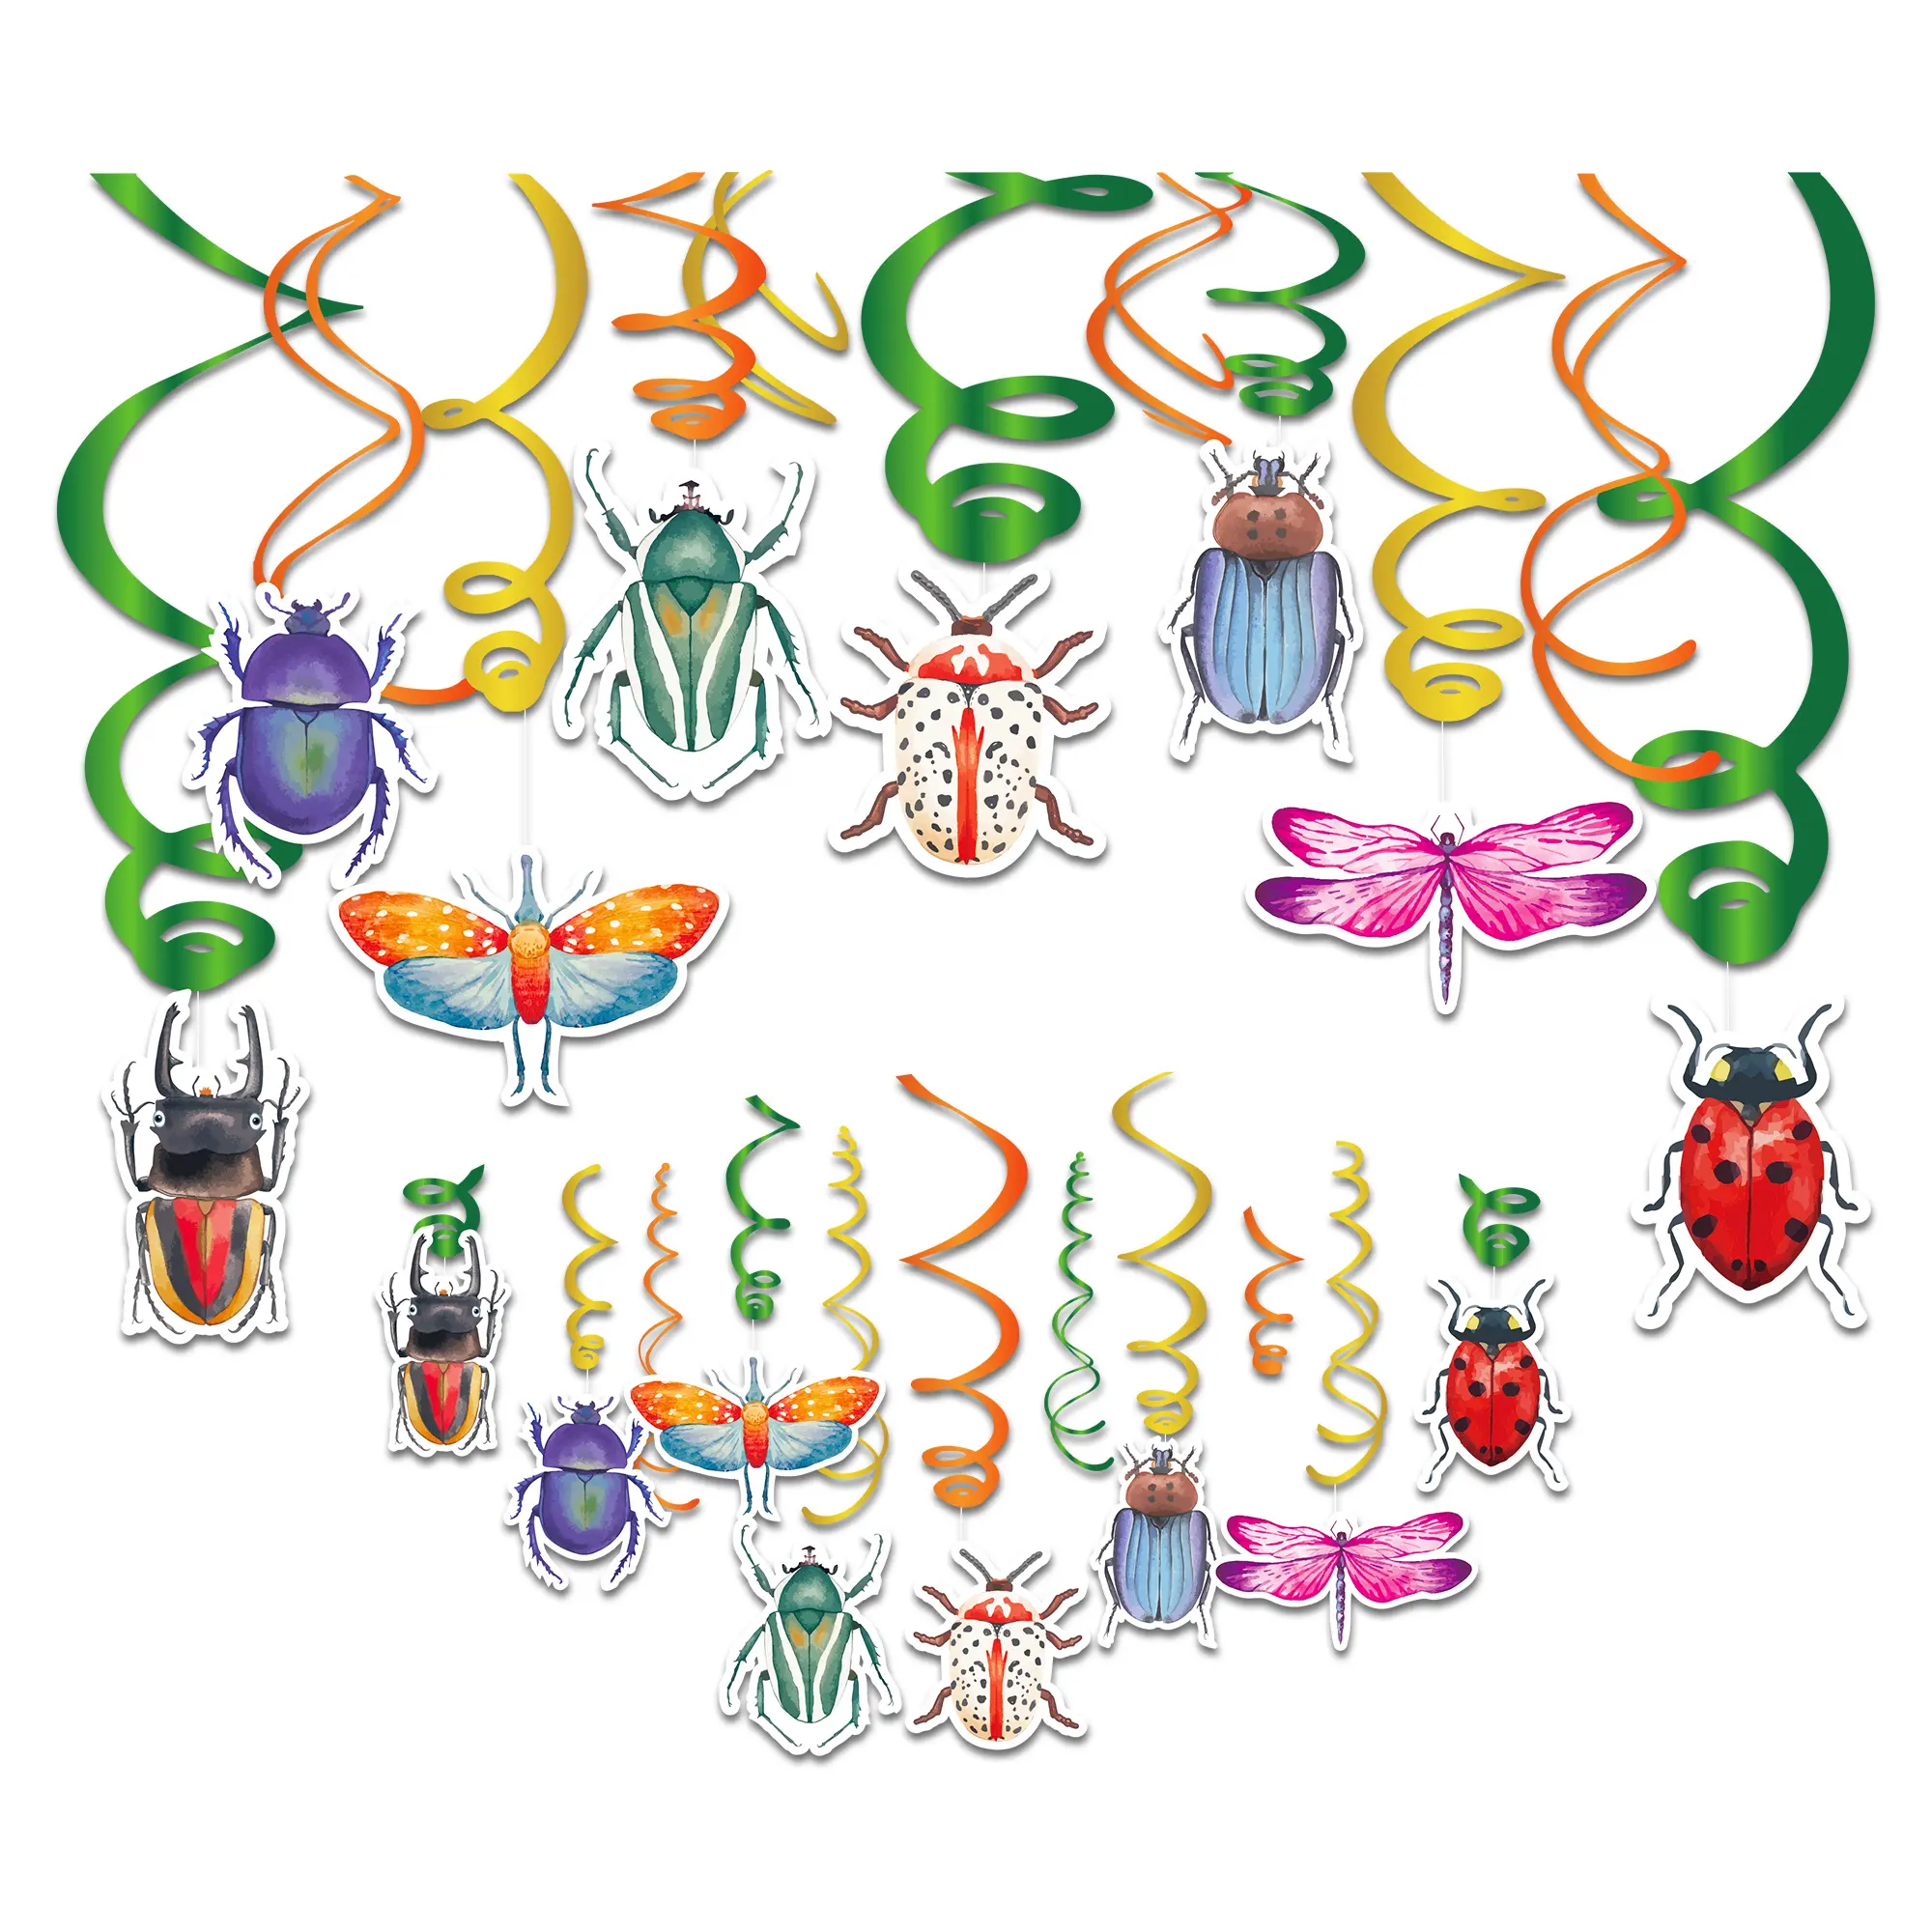 XL189 çocuklar parti dekorasyon kağıdı böcek tasarım asılı folyo Swirls böcek parti için Set